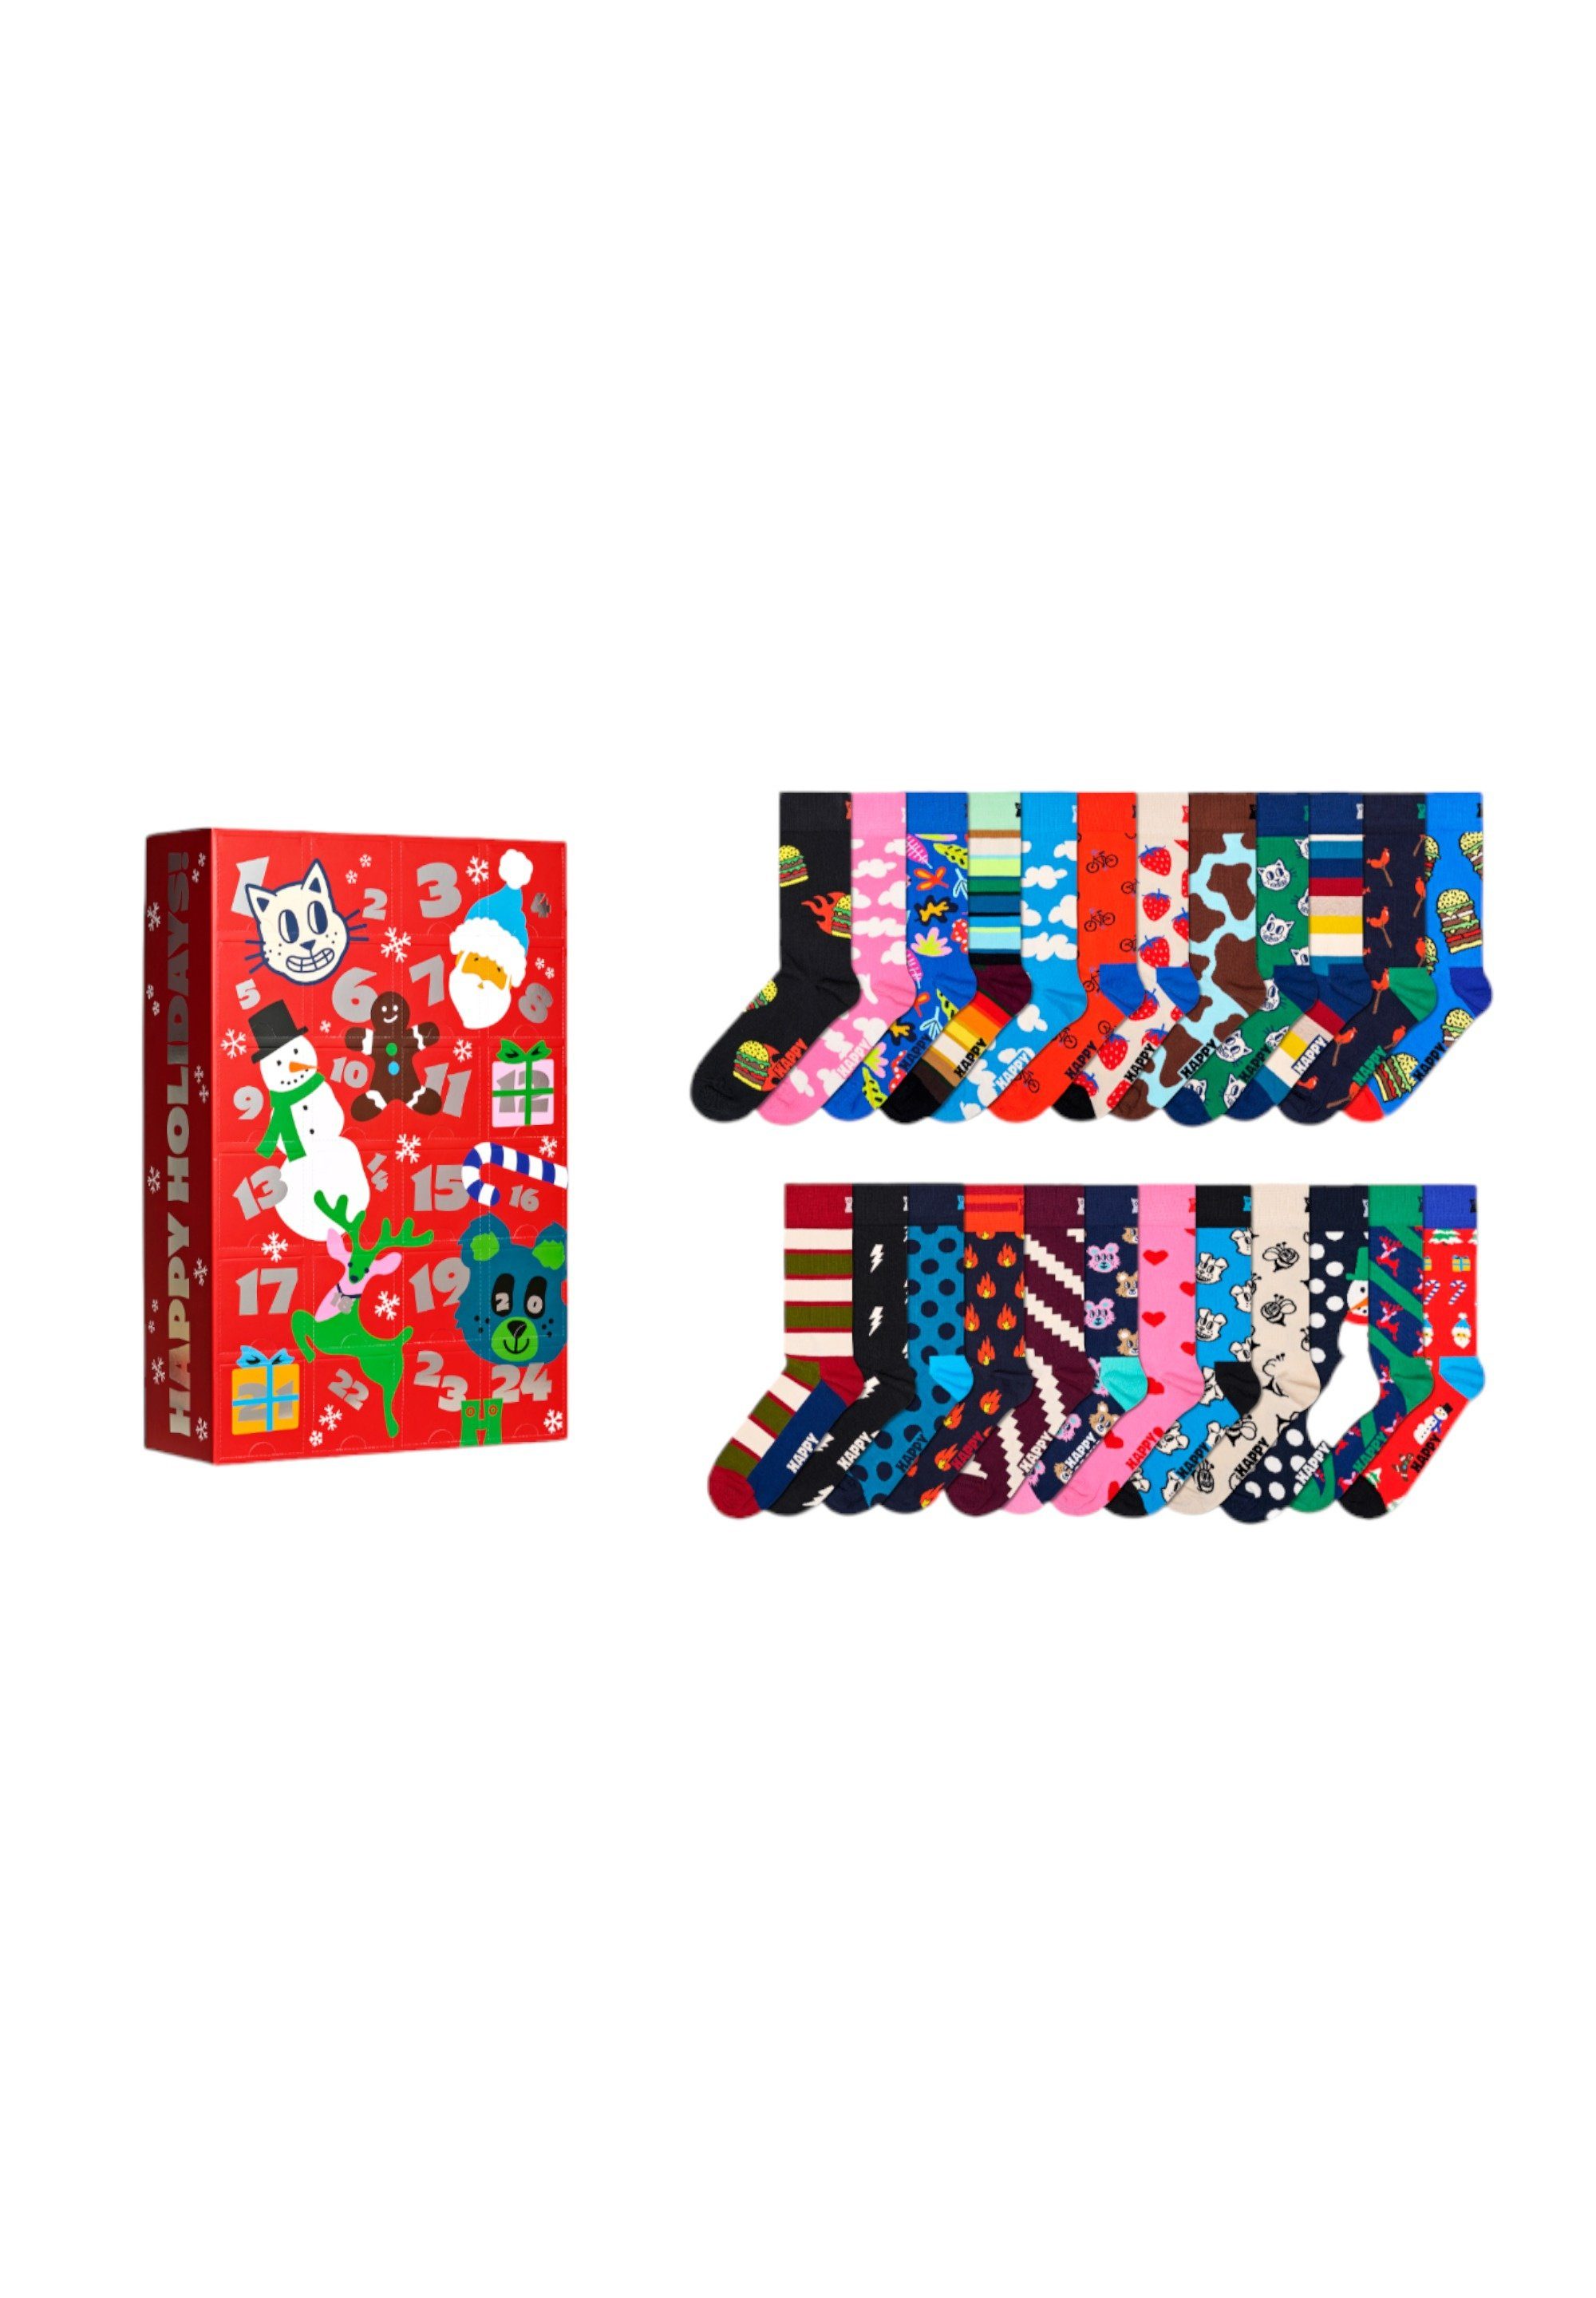 Aus Socks Calender Set, Adventskalender Advent Gift weicher Socks Baumwolle Happy